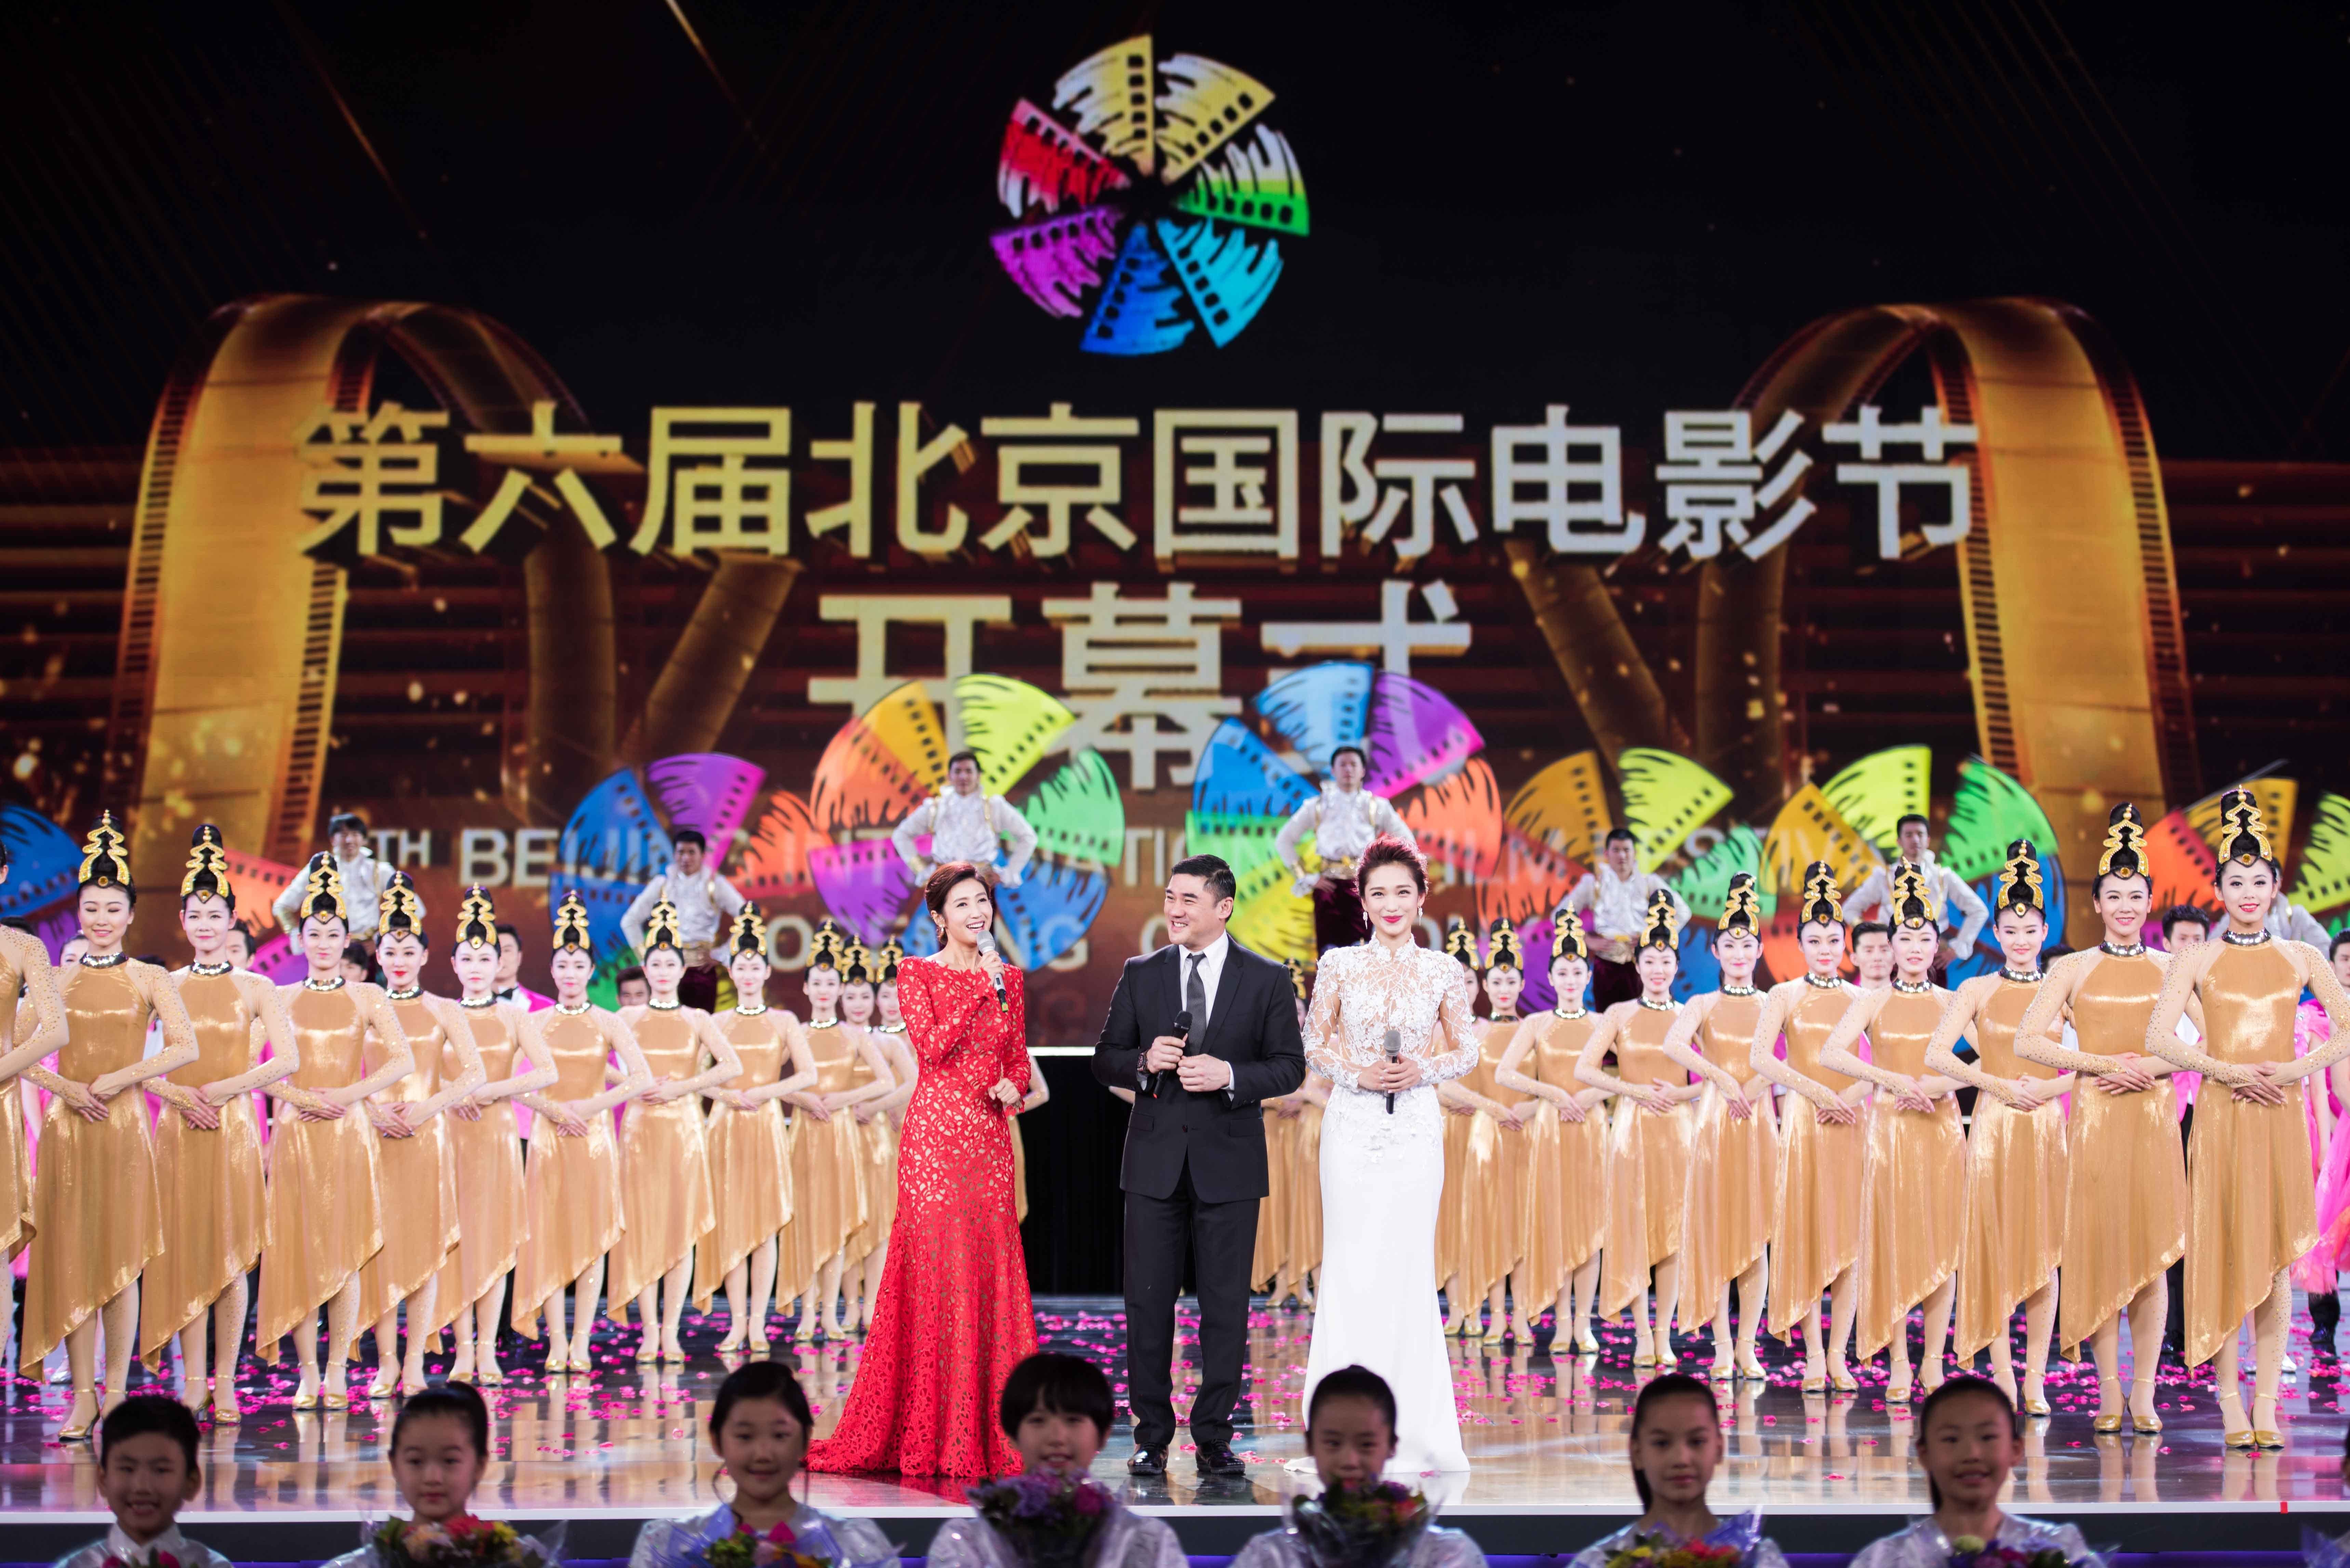 2016年4月16日拍摄的第六届北京国际电影节开幕红毯现场(全景相机